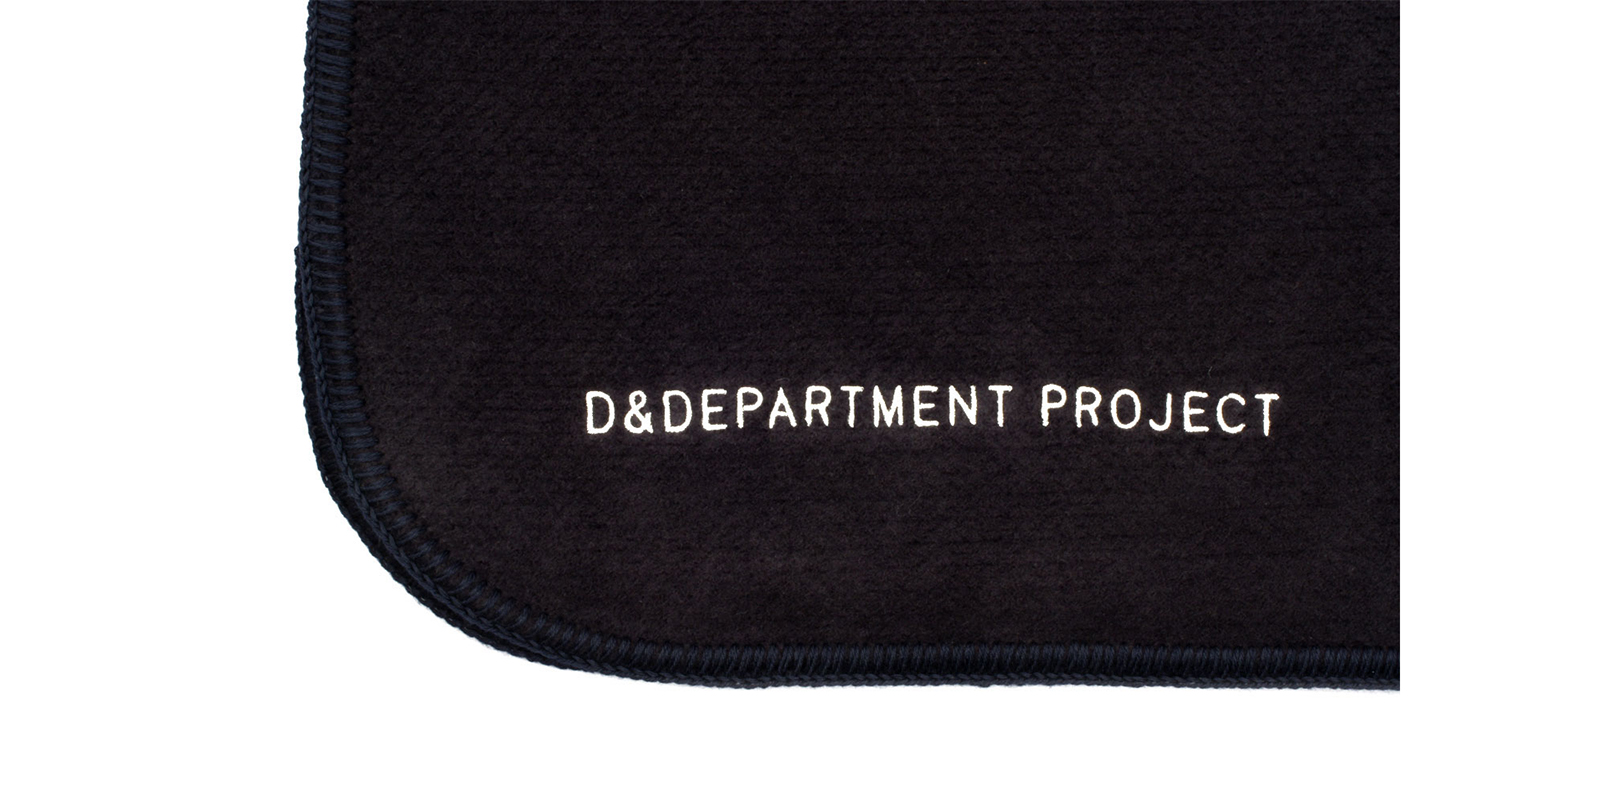 D&DEPARTMENT PROJECTコットンブランケット・レギュラー・ブラック